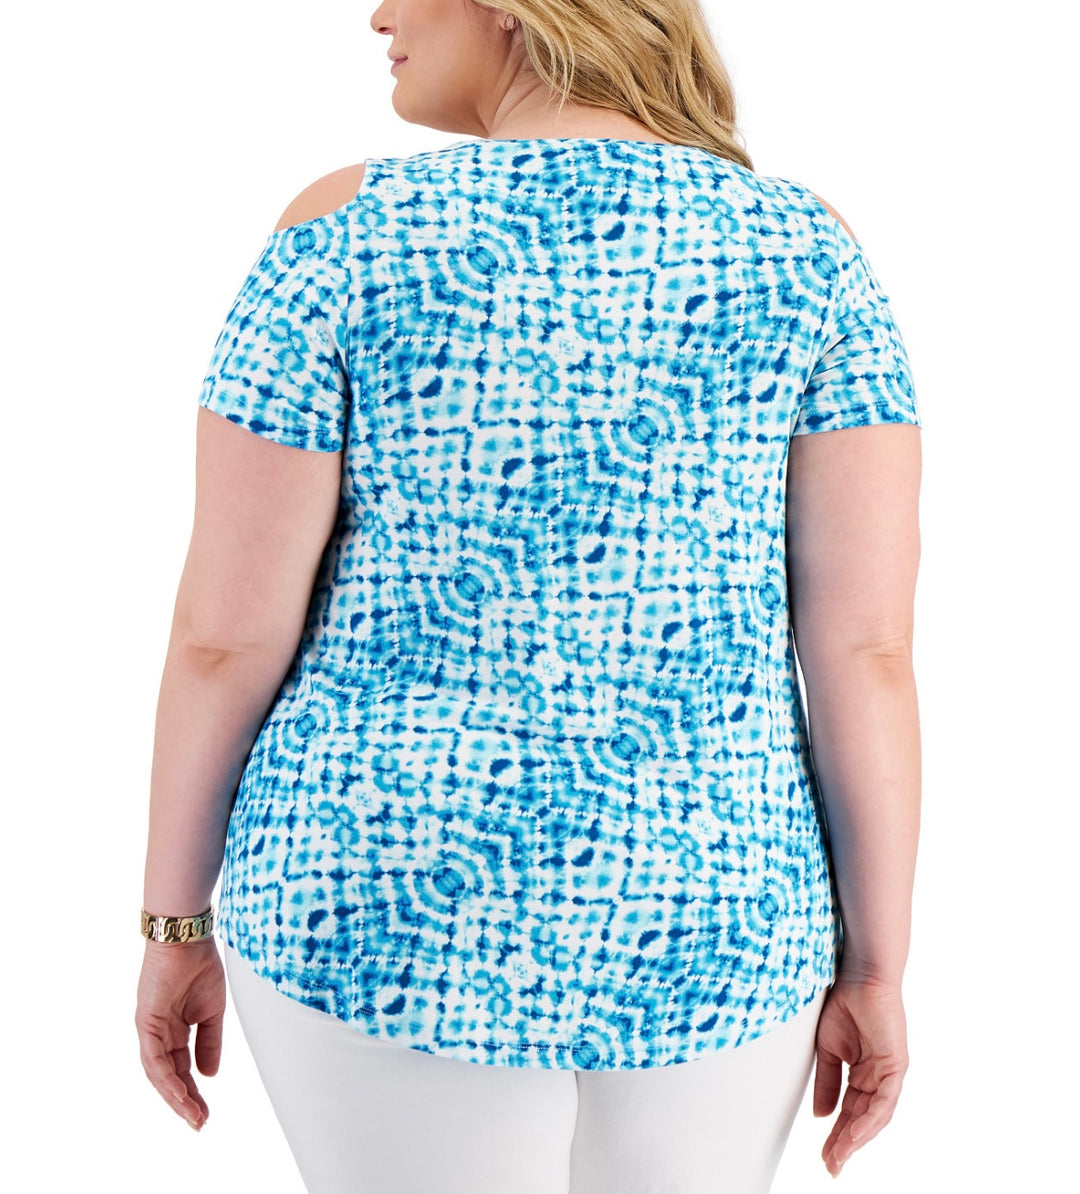 JM Collection Women's Printed Cold-Shoulder Top Seafoam Blue Combo Plus Size 4X